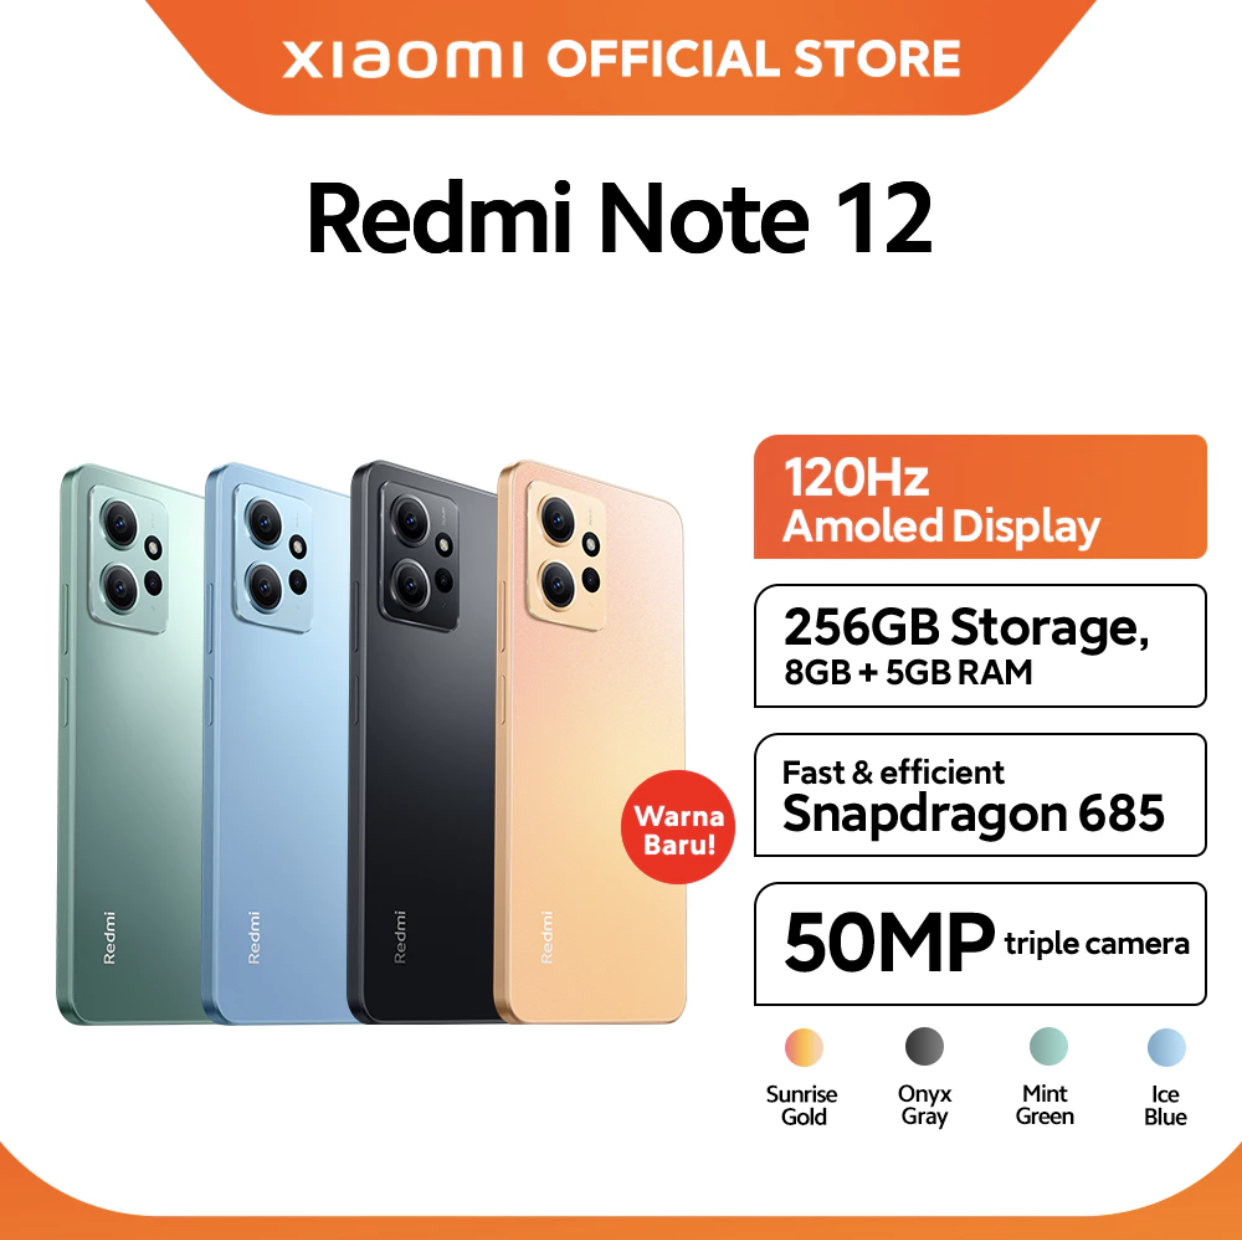 1. Xiaomi redmi note 12